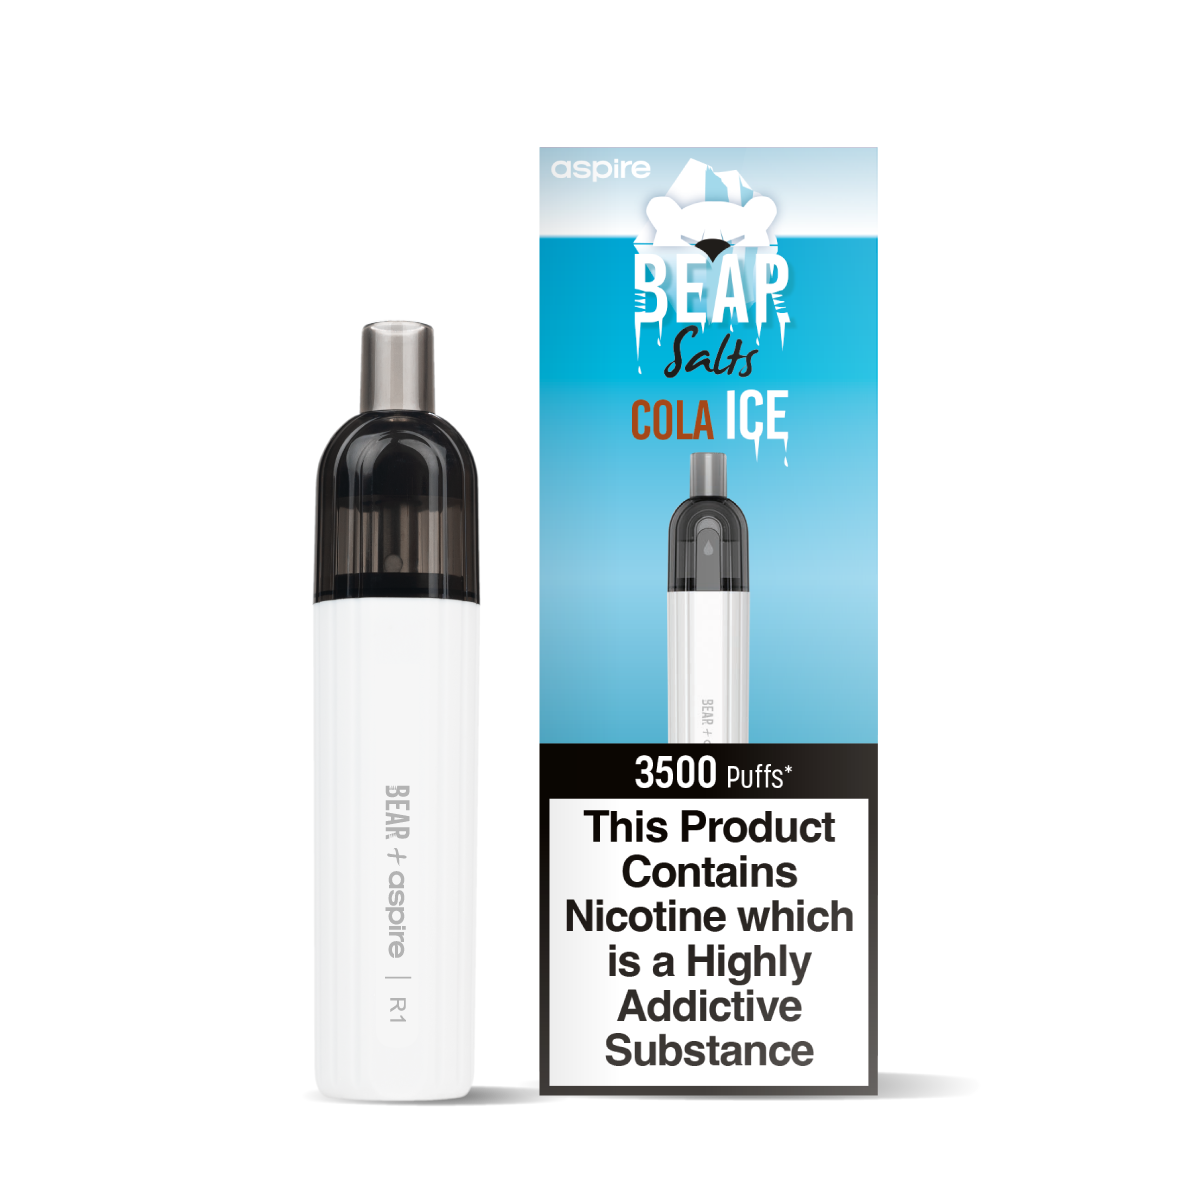 BEAR Polar Cola Ice Nic Salt in 10ml Bottle